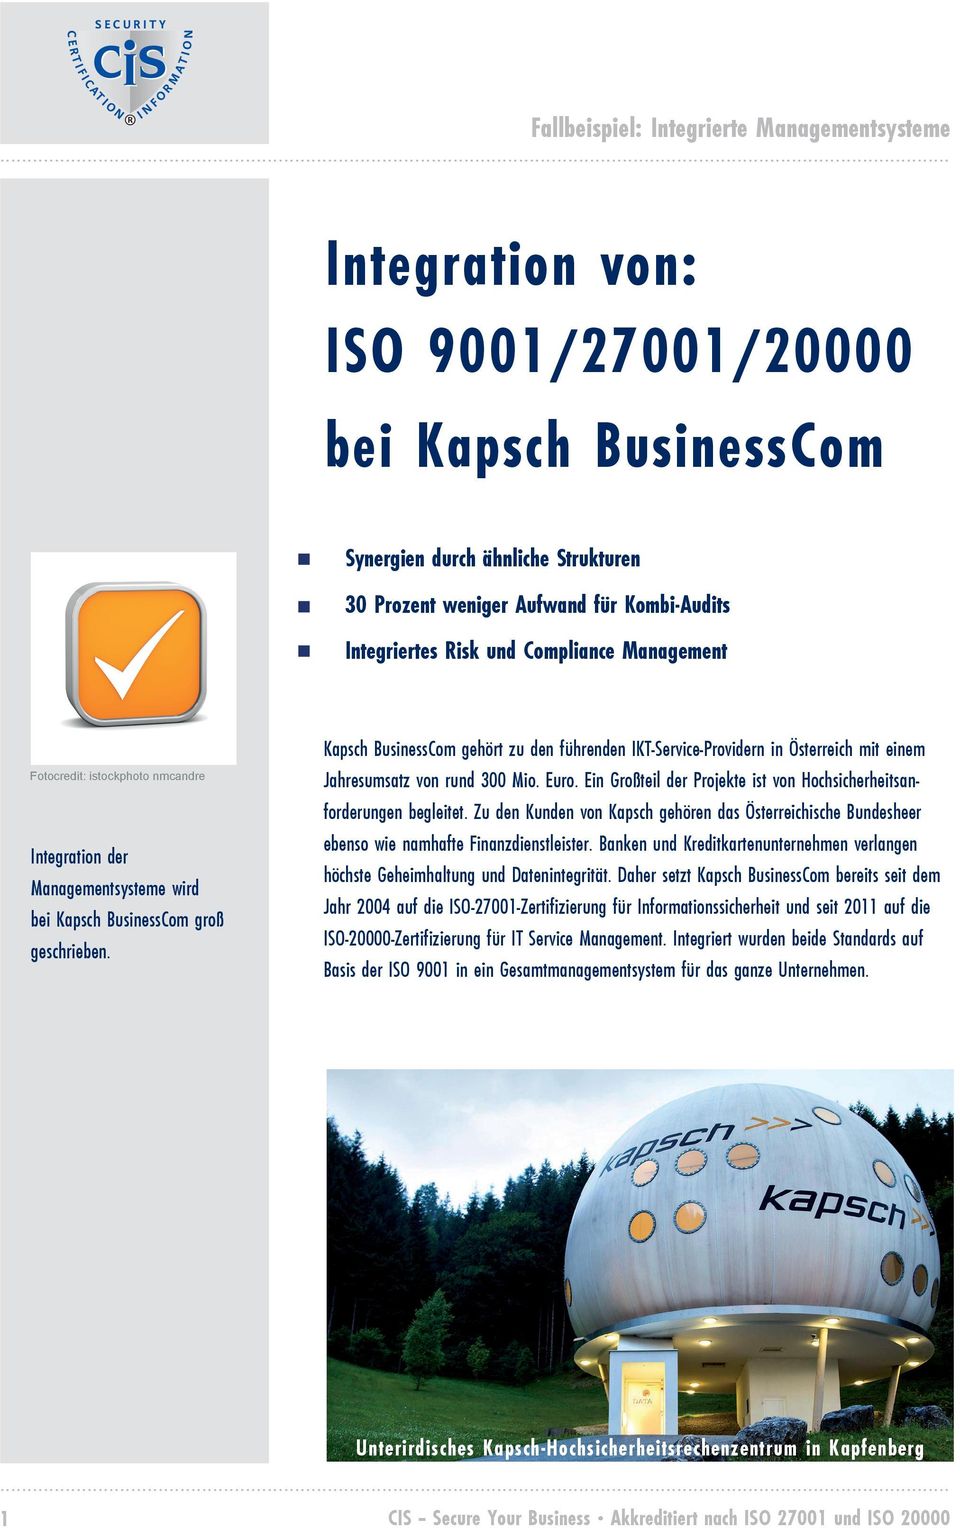 Kapsch BusinessCom gehört zu den führenden IKT-Service-Providern in Österreich mit einem Jahresumsatz von rund 300 Mio. Euro. Ein Großteil der Projekte ist von Hochsicherheitsanforderungen begleitet.